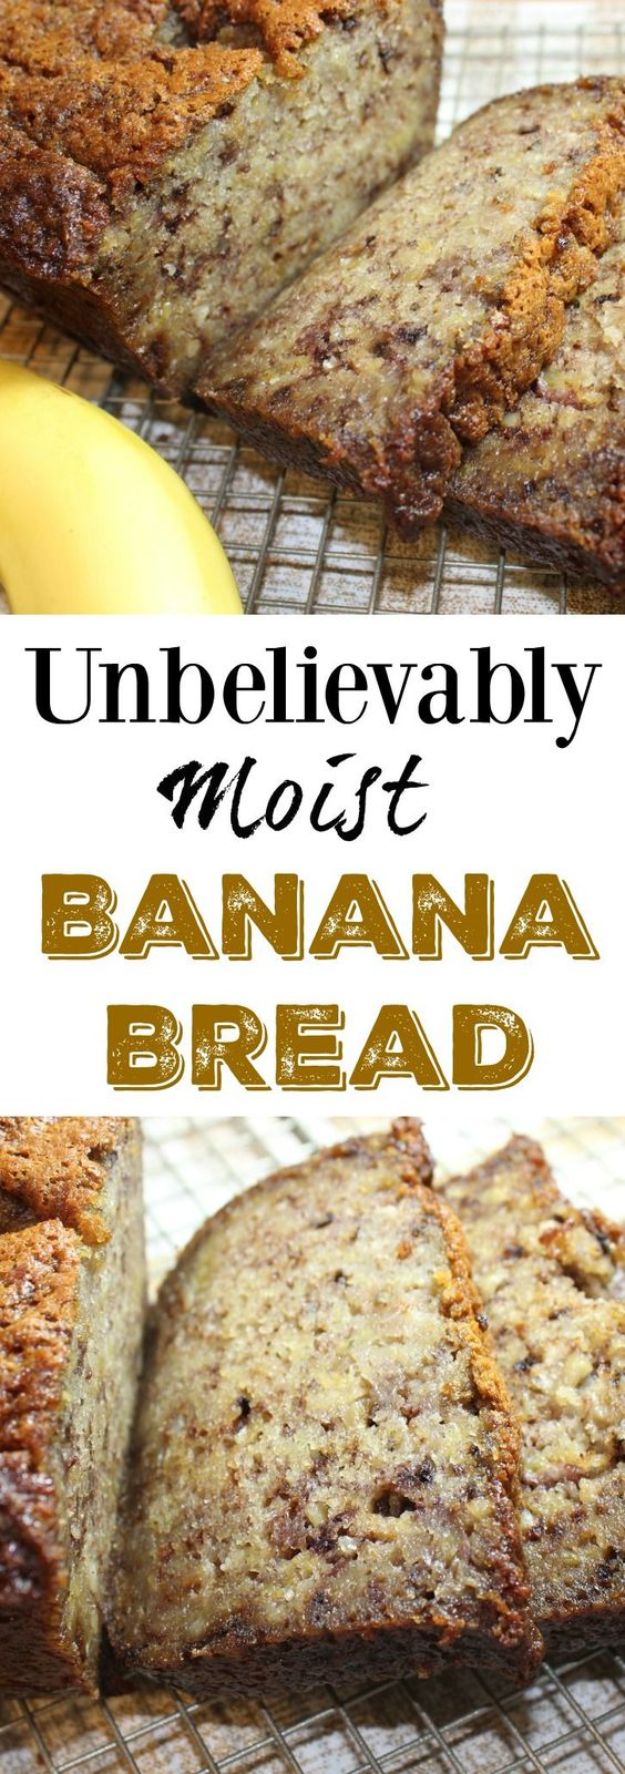 Moist Banana Bread Recipe - Best Way to Make Banana Bread at Home